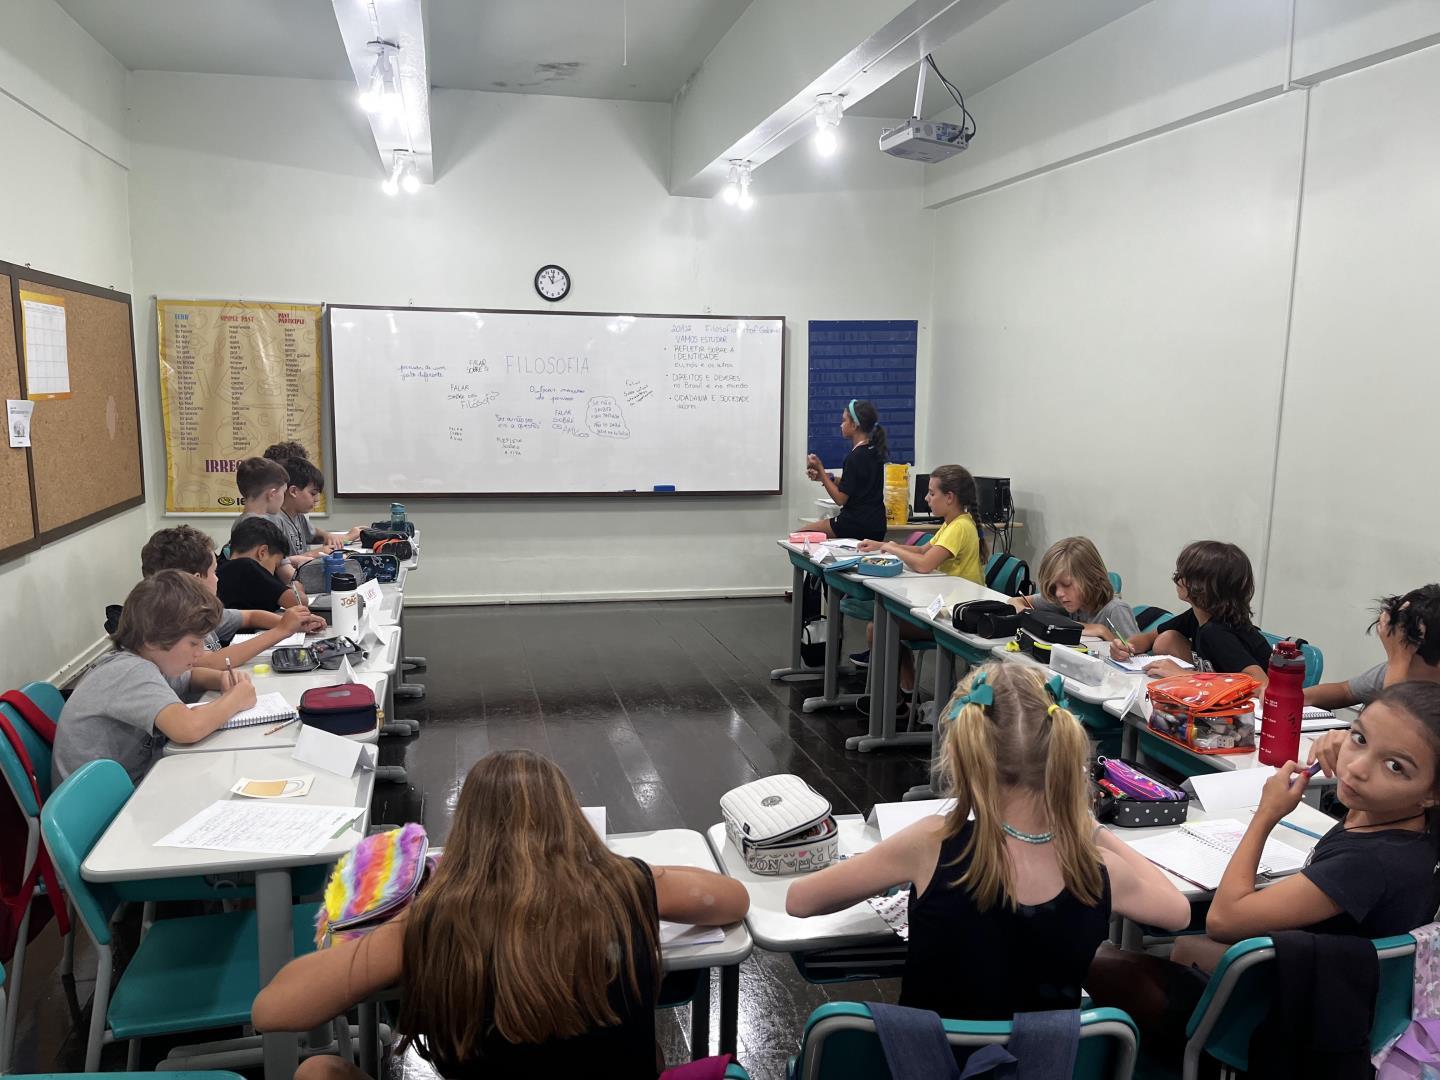 Em sala de aula, alunos do 5º ano discutem os significados da Filosofia